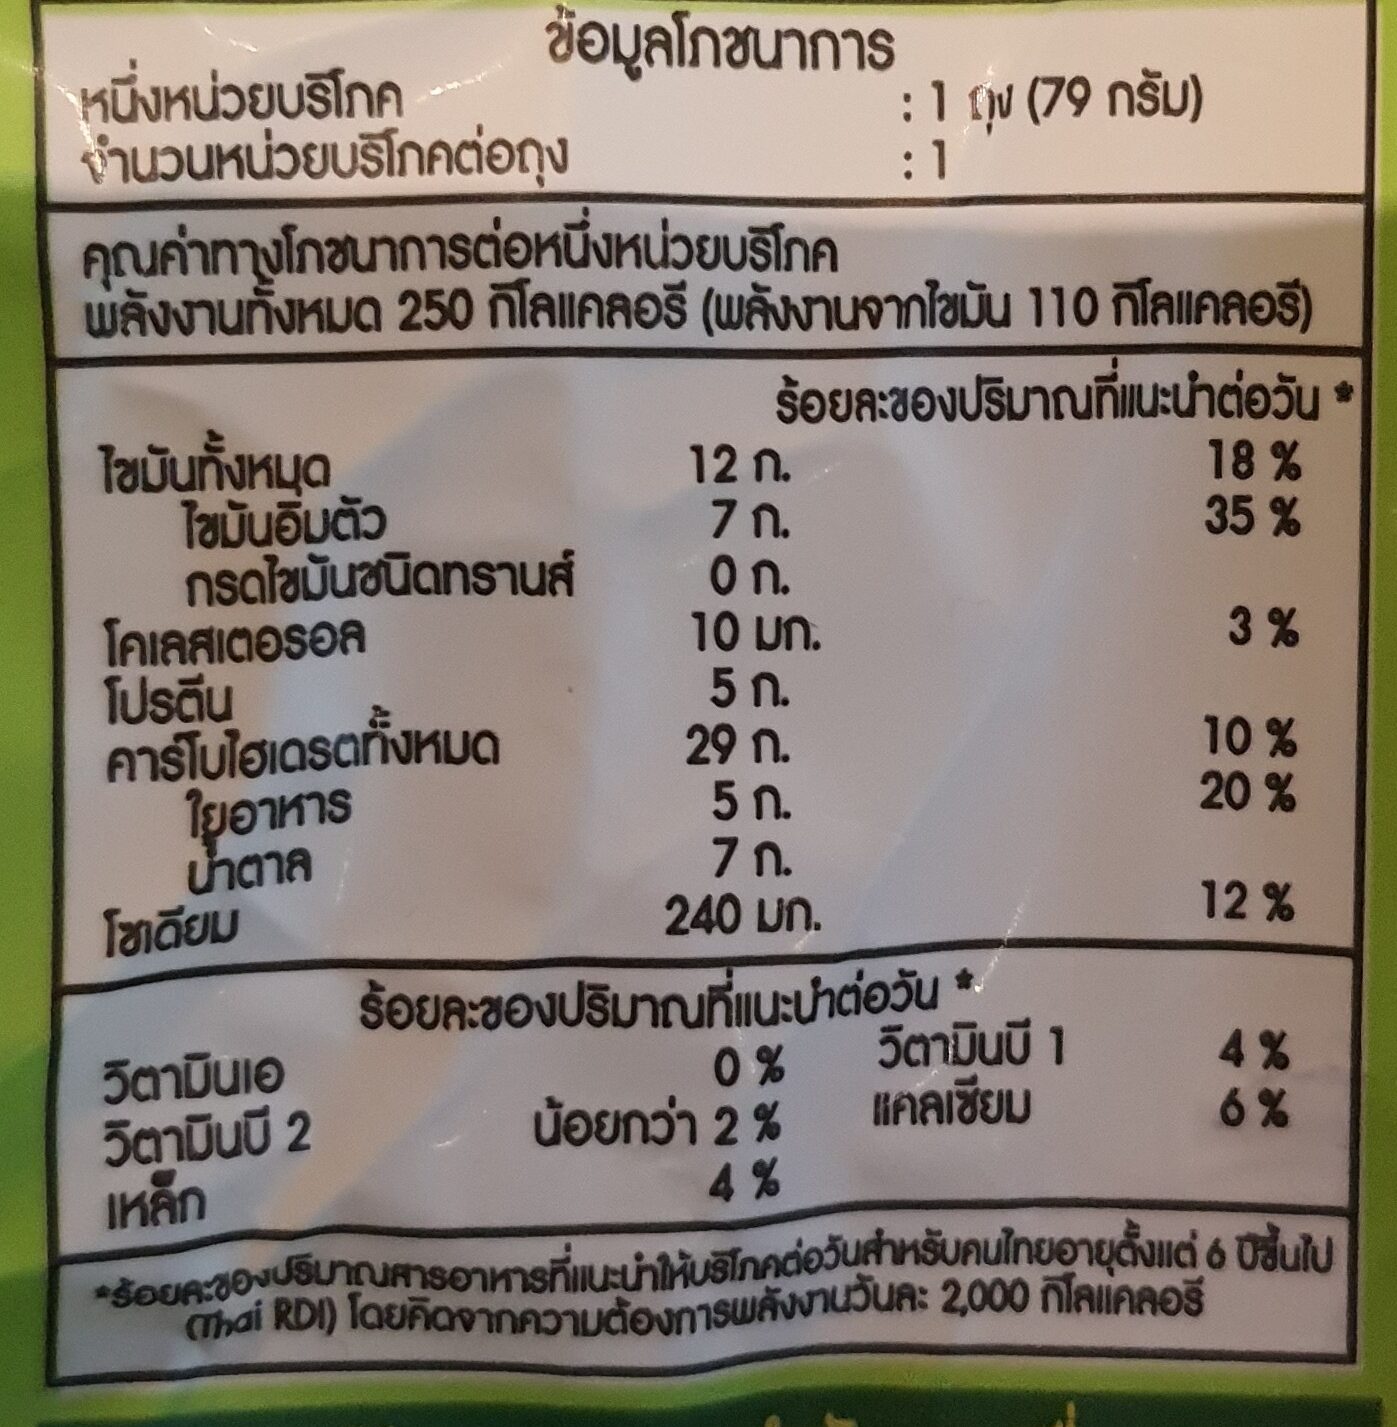 แซนวิชสังขยามะพร้าวอ่อน - 79 g - Nutrition facts - th